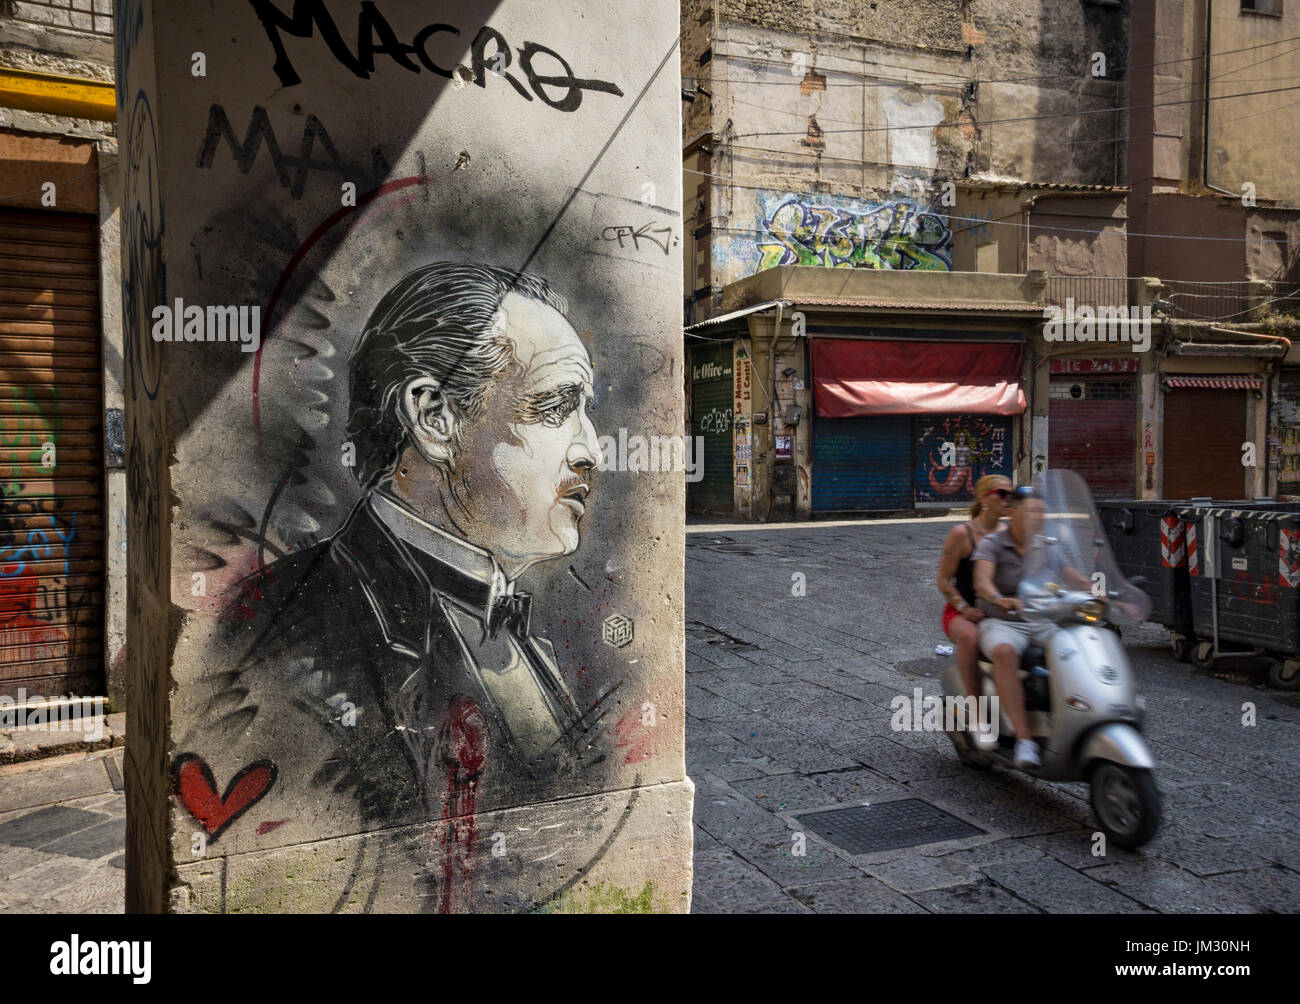 Street art dépeignant comme le parrain de Marlon Brando dans le film du même nom, dans la Vucciria market district Centre de Palerme, en Sicile. Banque D'Images